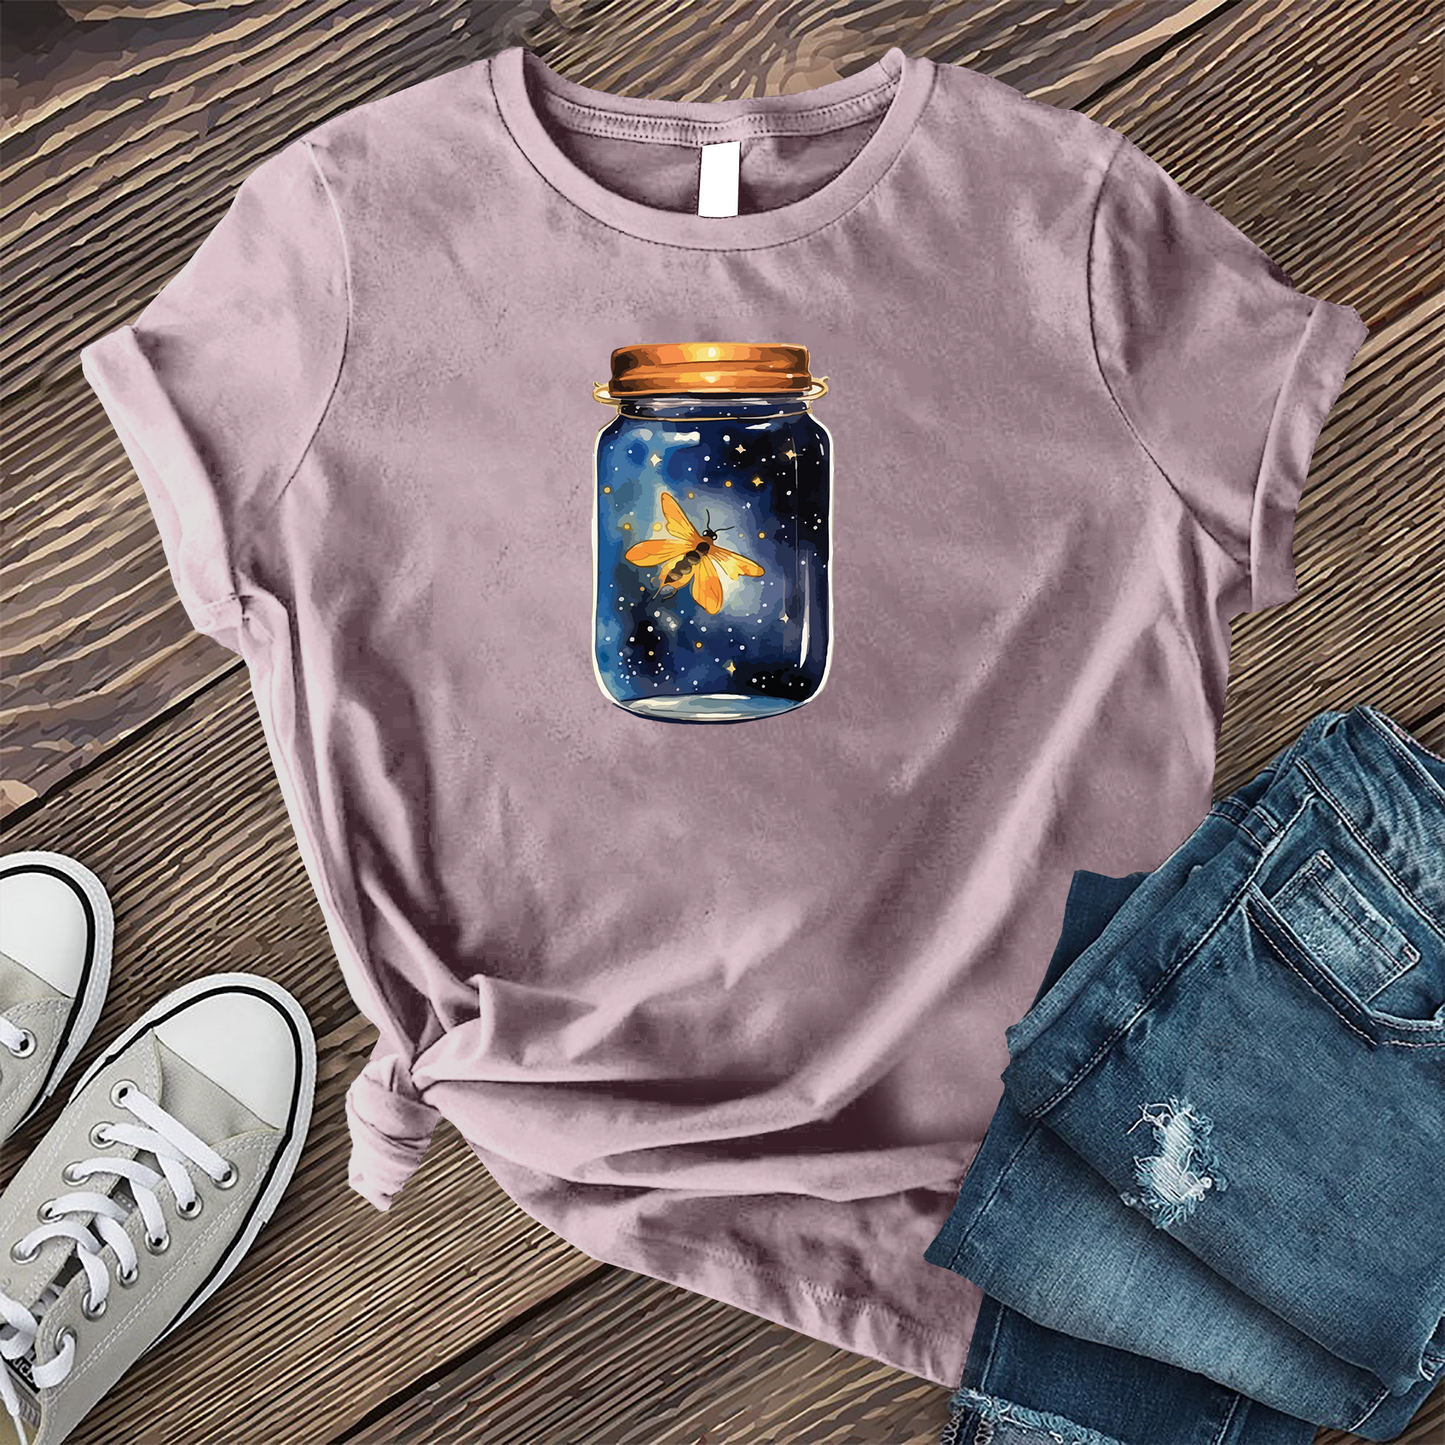 Glowing Firefly Jar T-shirt